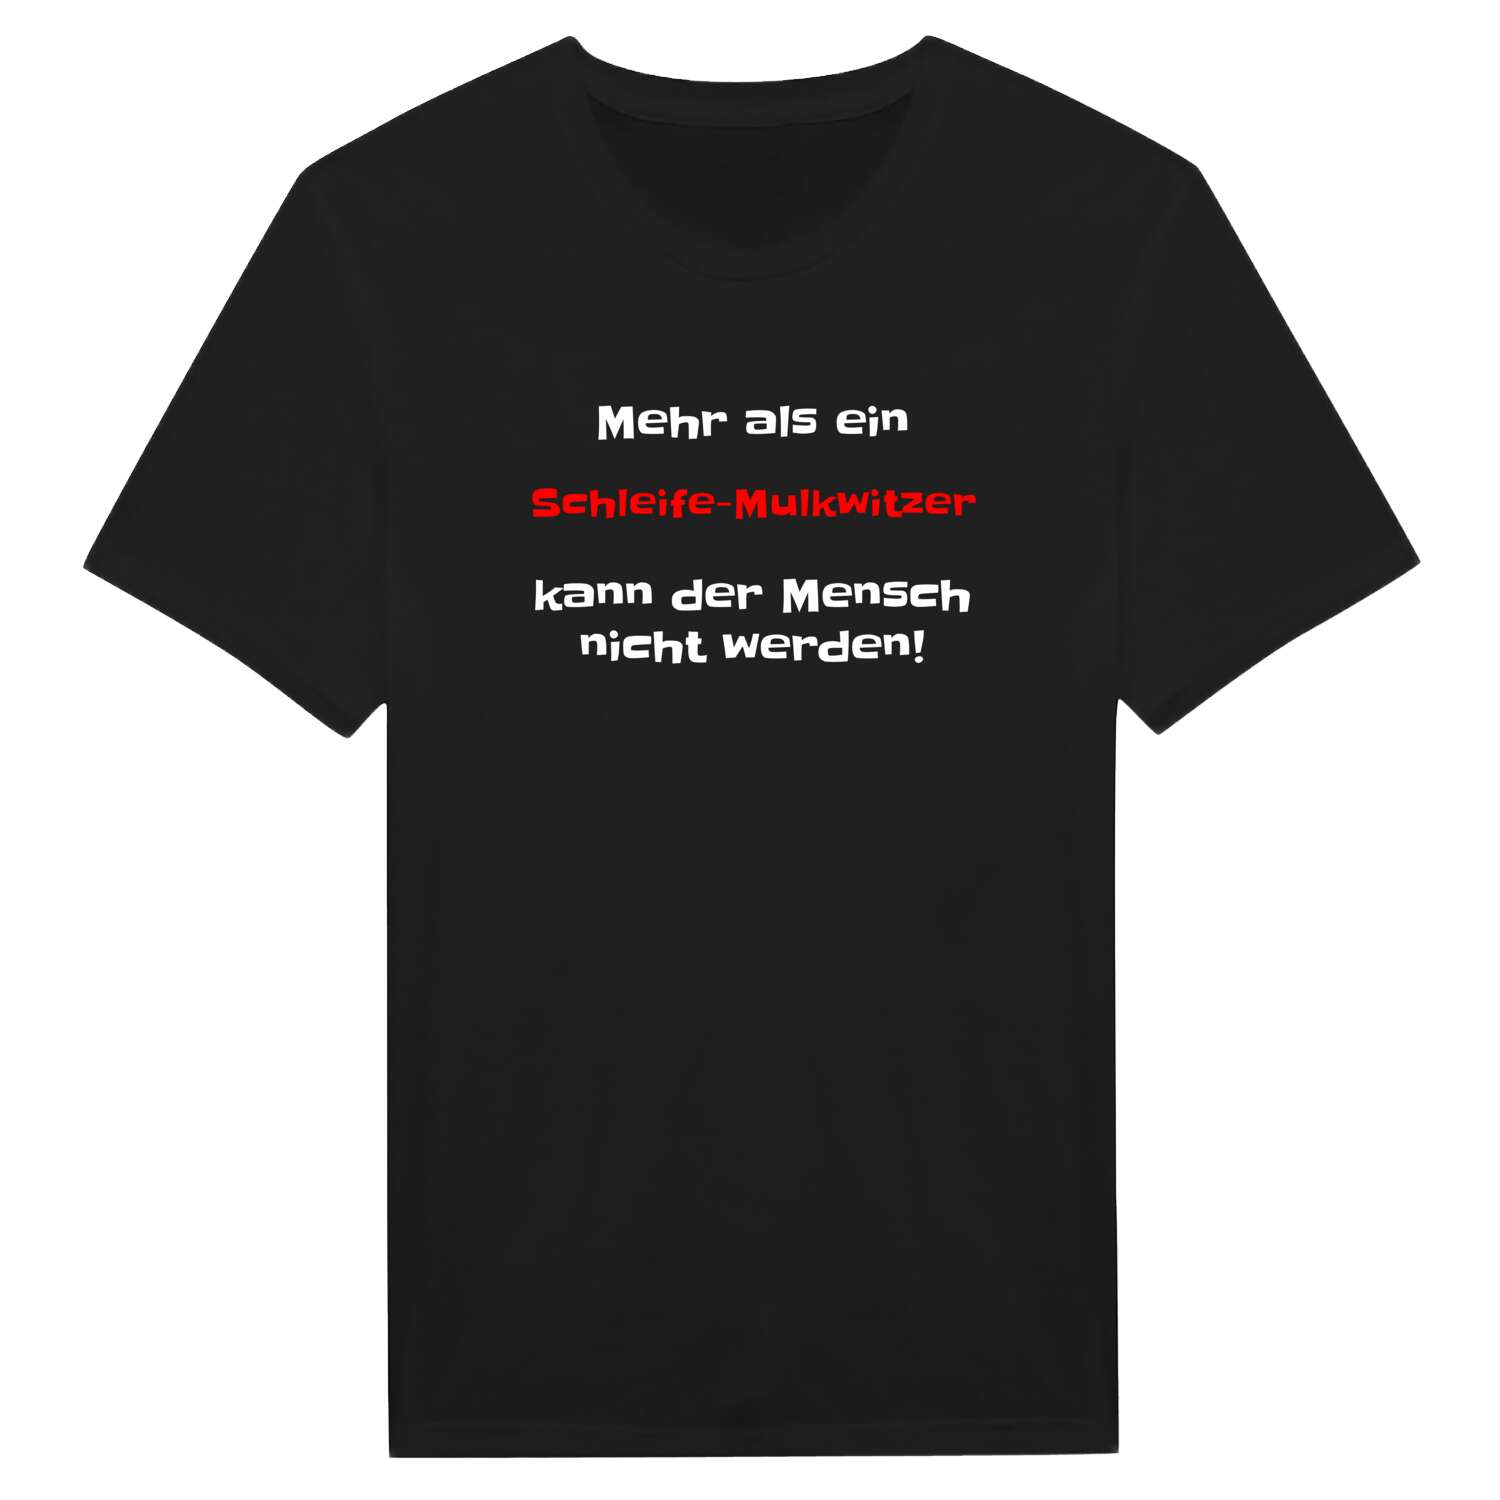 Schleife-Mulkwitz T-Shirt »Mehr als ein«